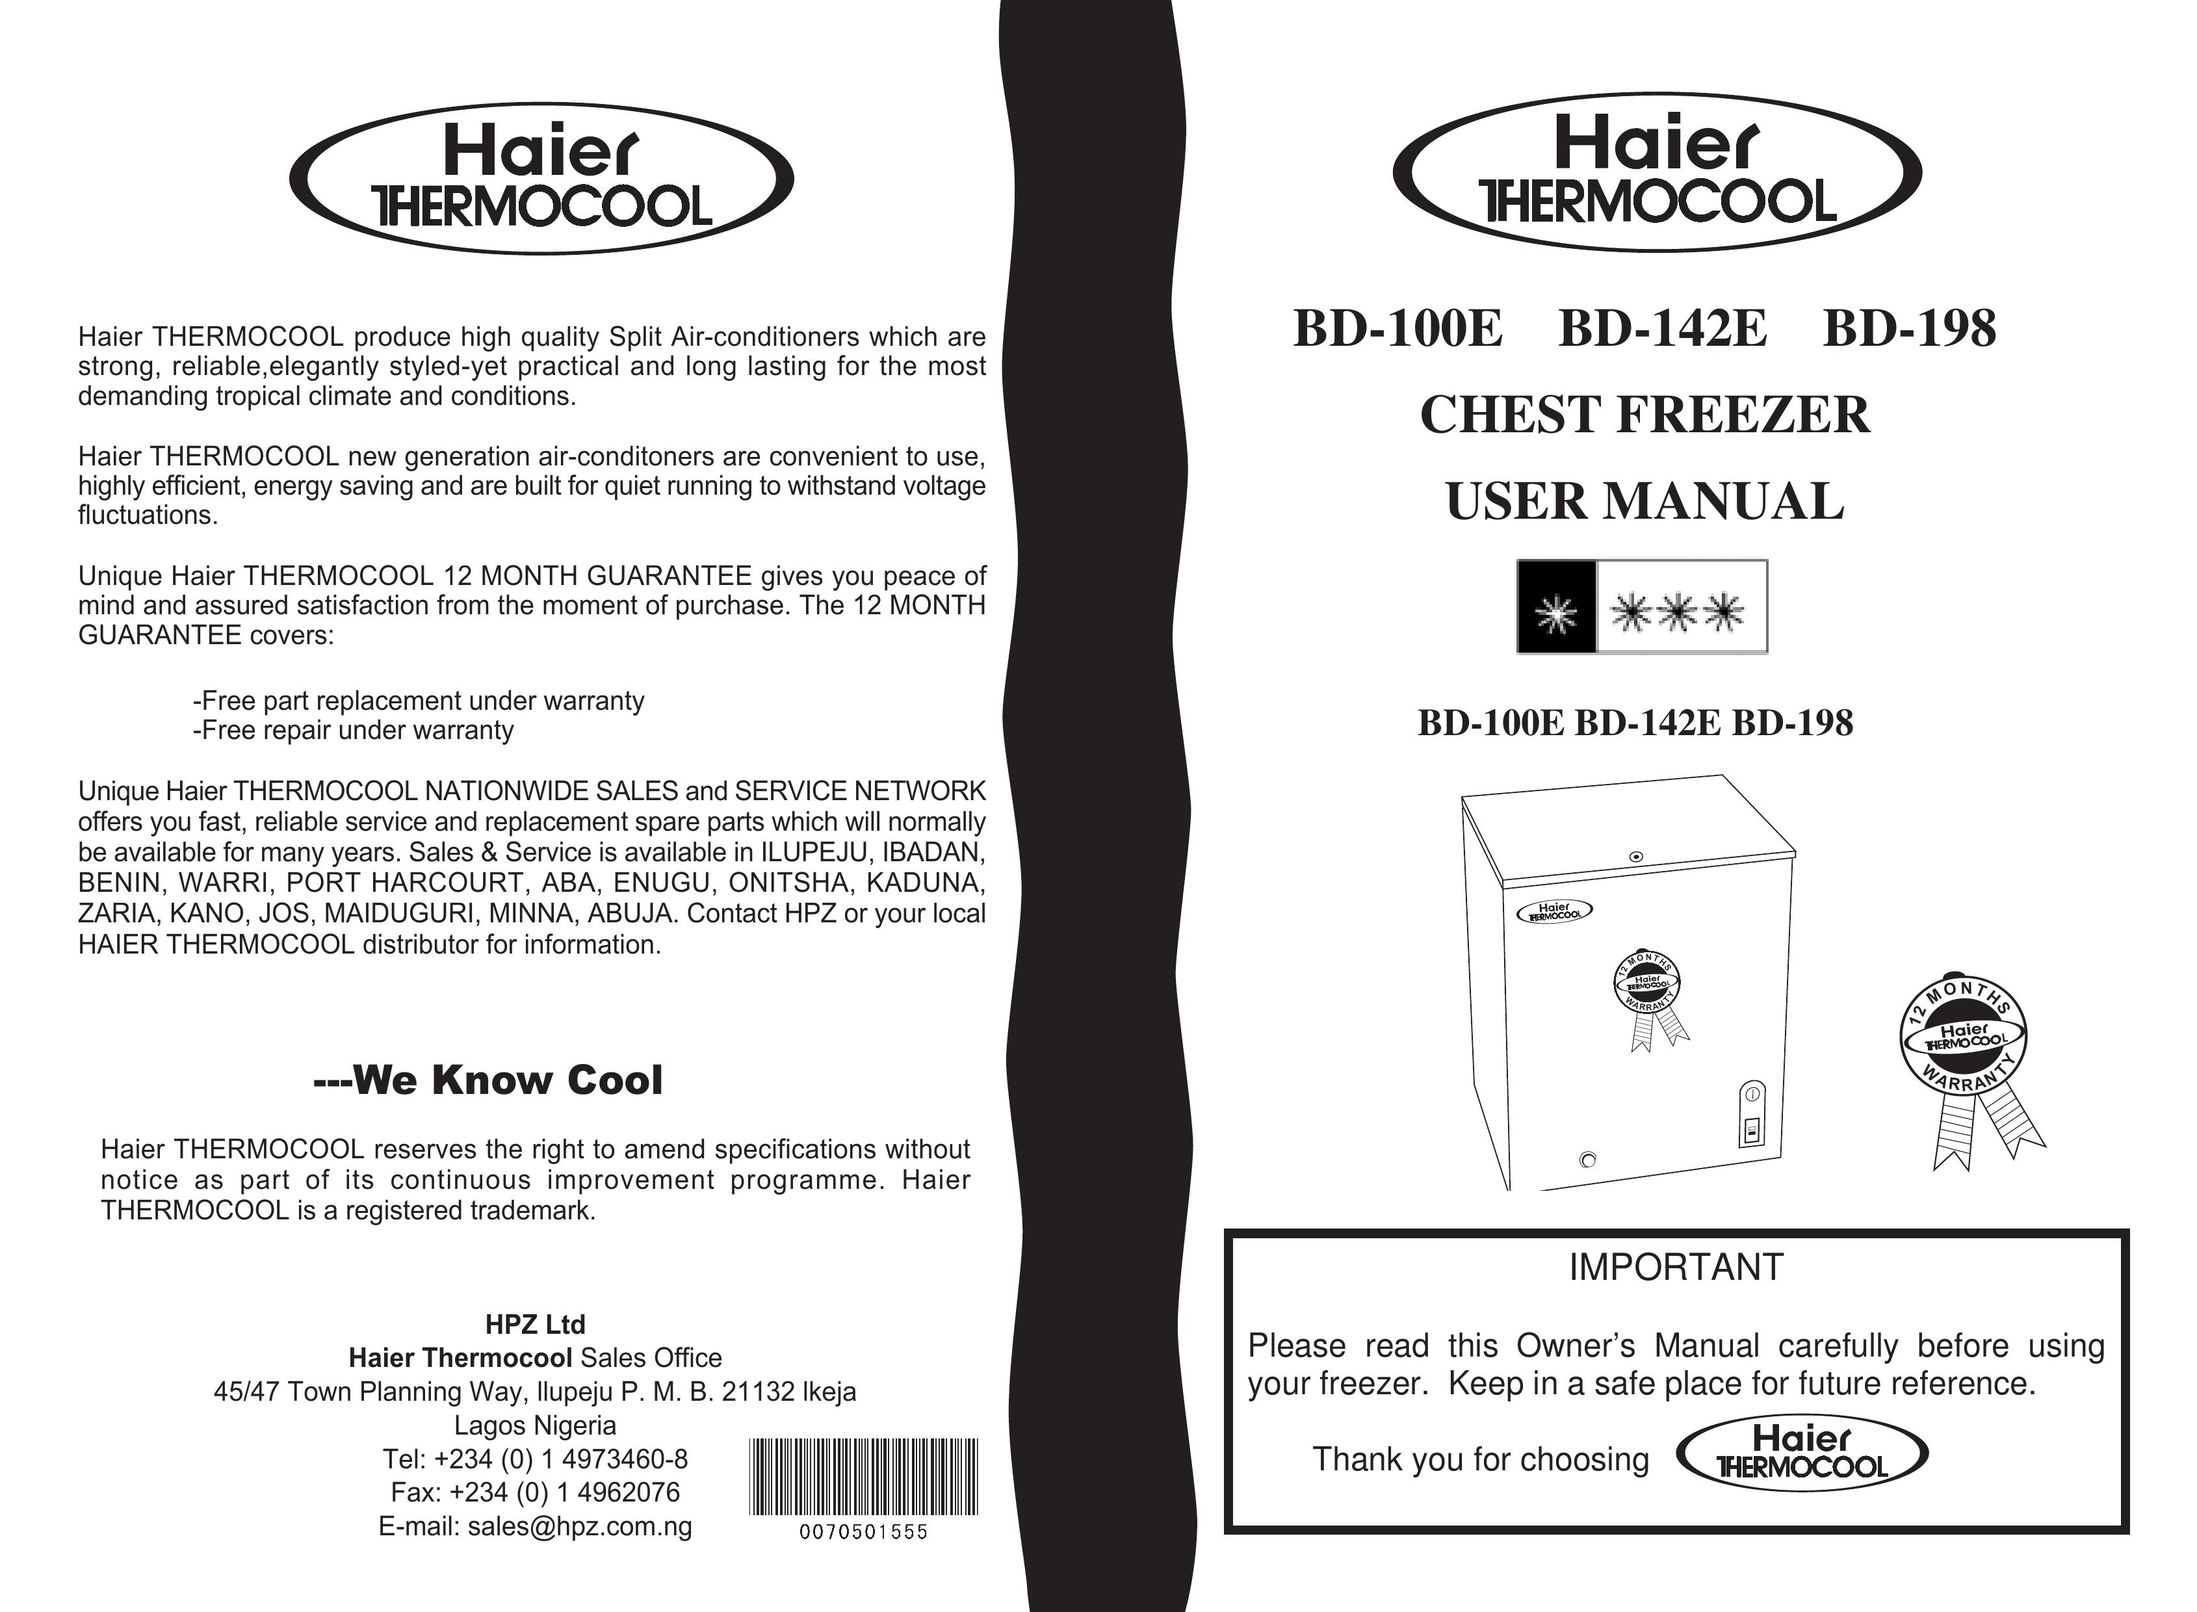 Haier BD-198 Freezer User Manual